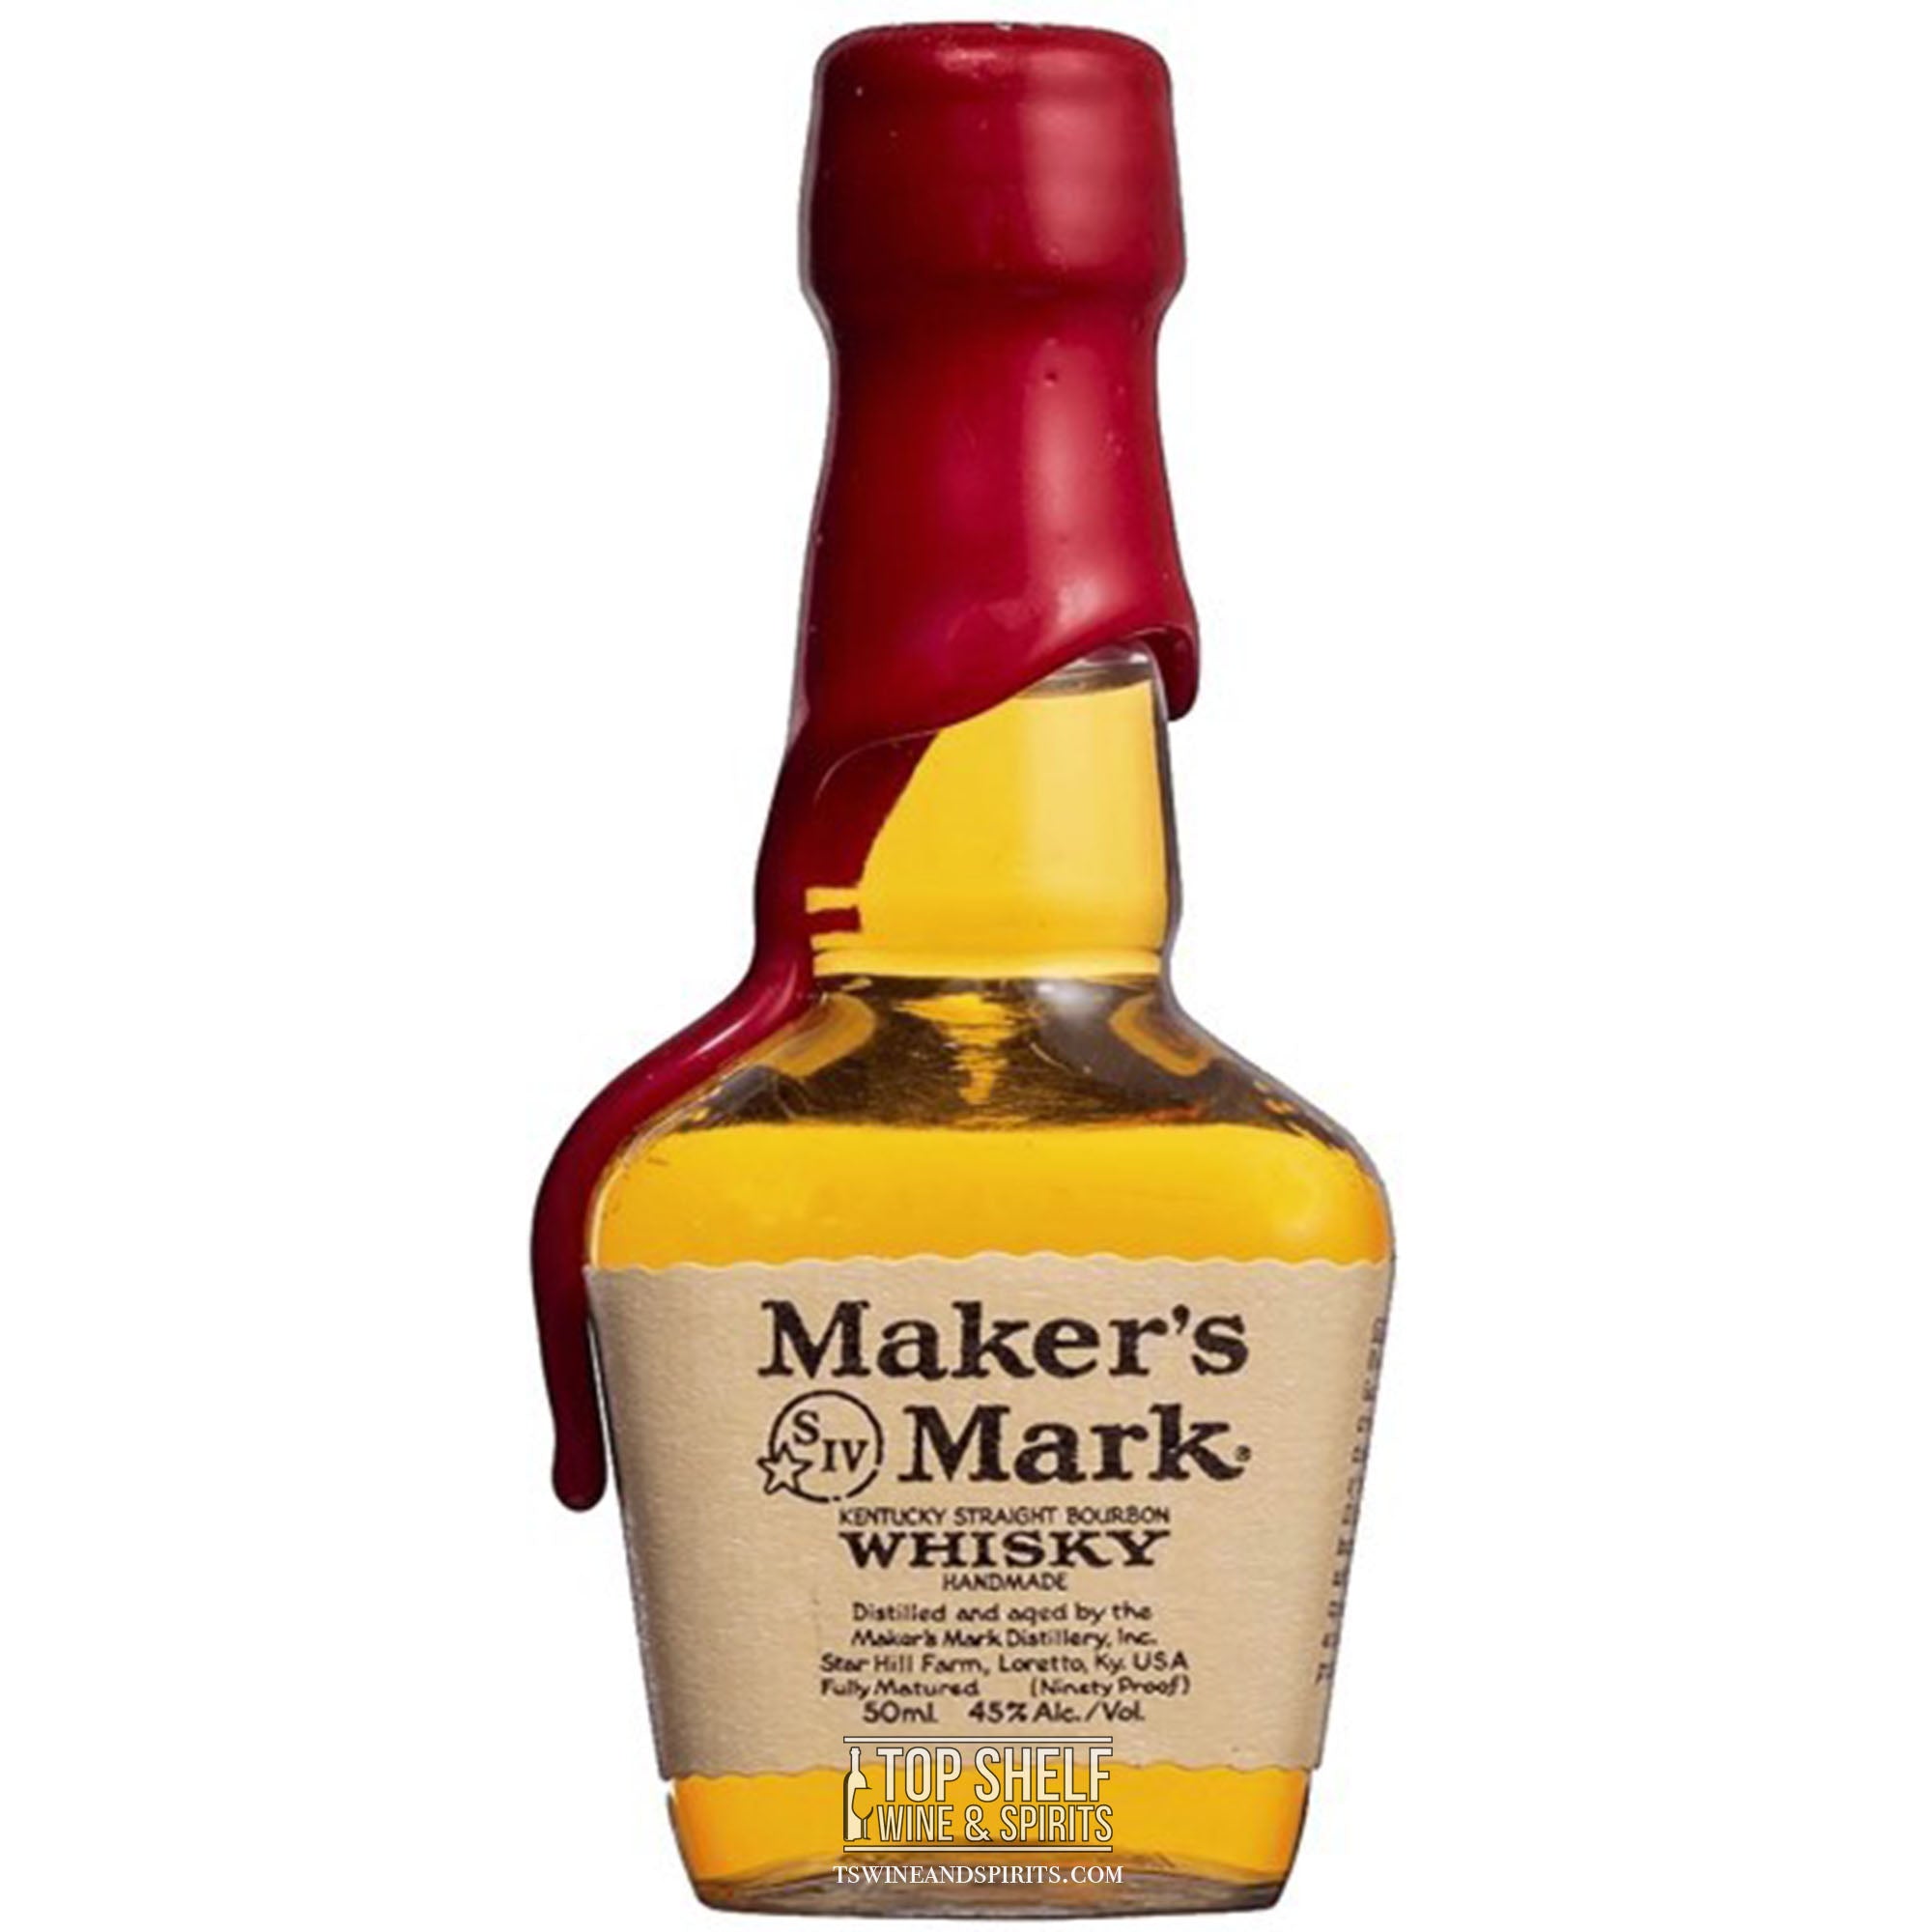 Maker's Mark  Handmade Kentucky Bourbon Whisky